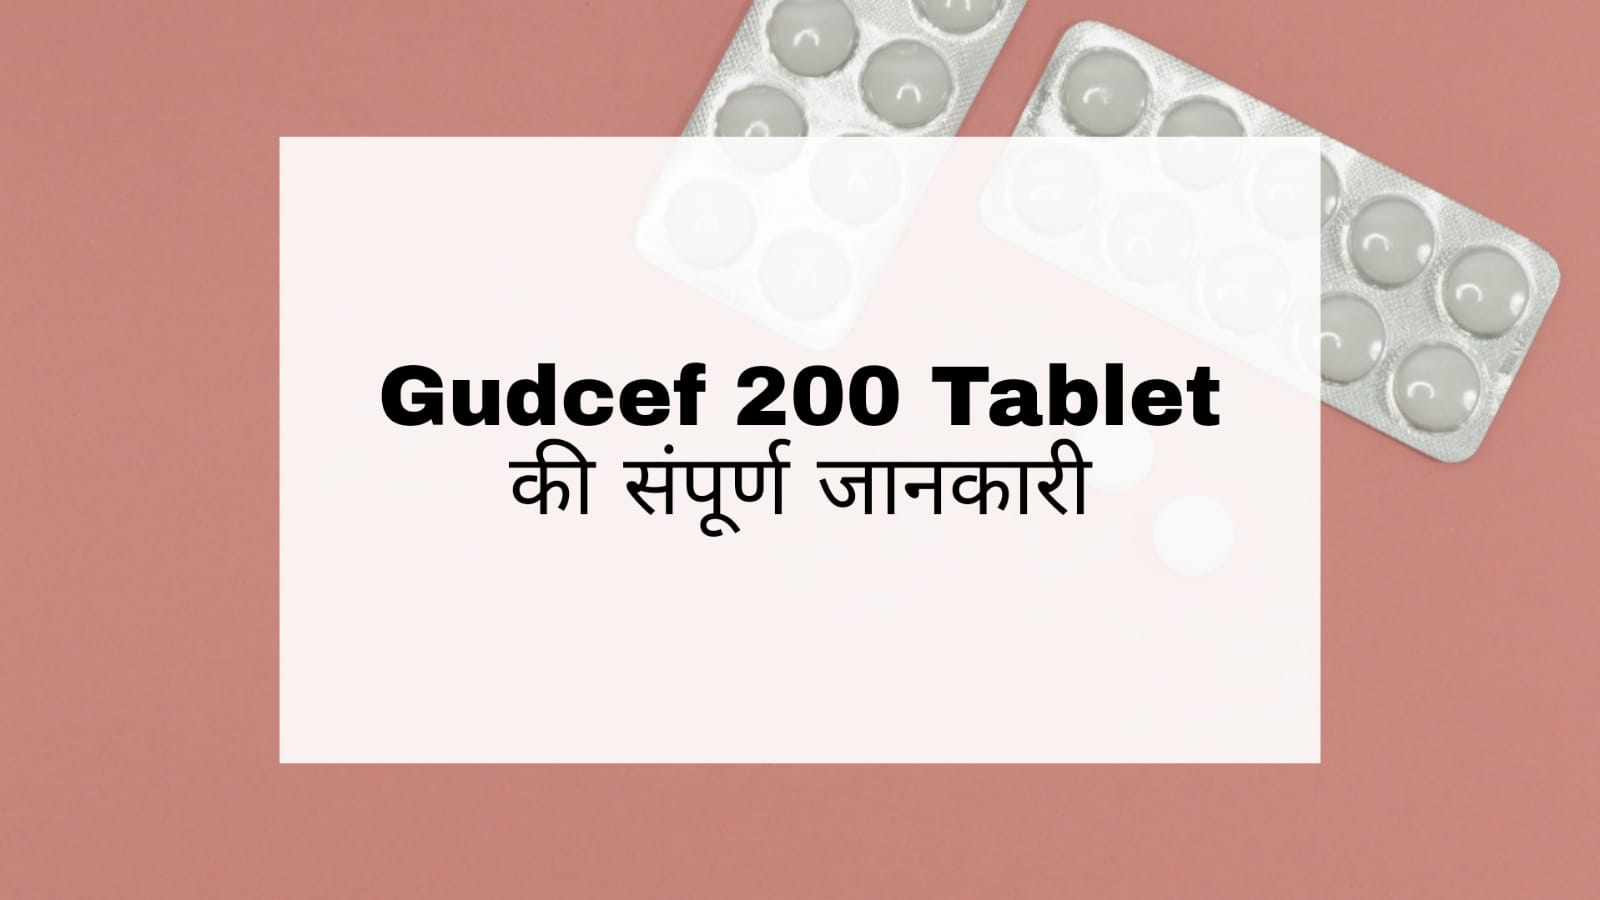 Gudcef 200 Tablet in Hindi: उपयोग, दुष्प्रभाव, सावधानियां